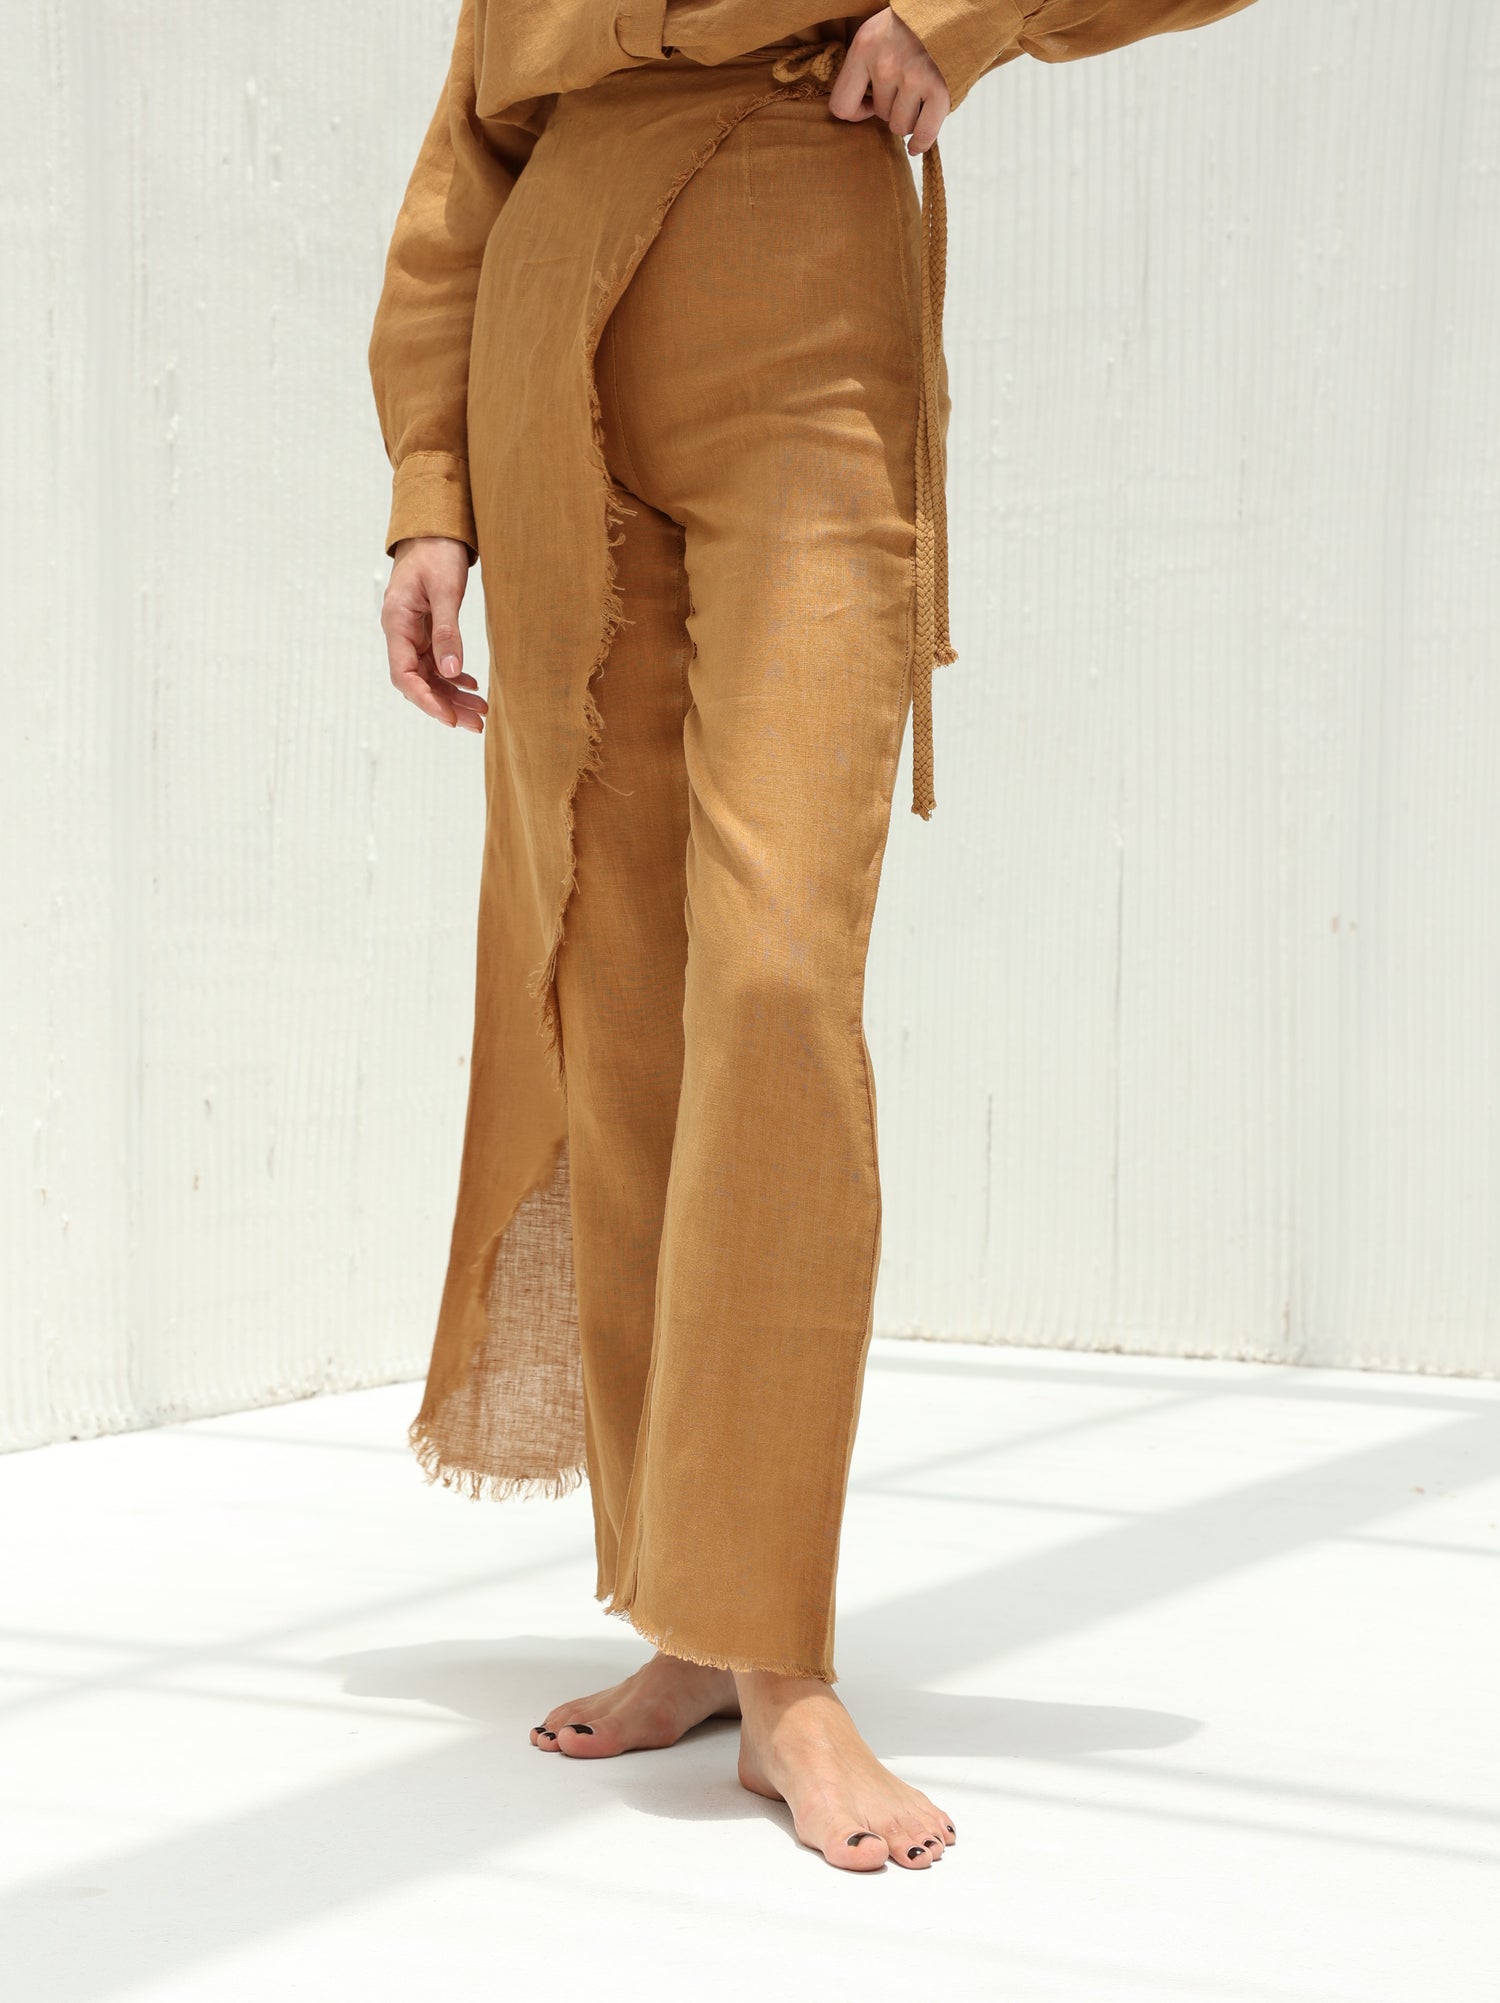 Lia Pure Linen Wrap Skirt Pants by G Linen  - Acorn - Front shot